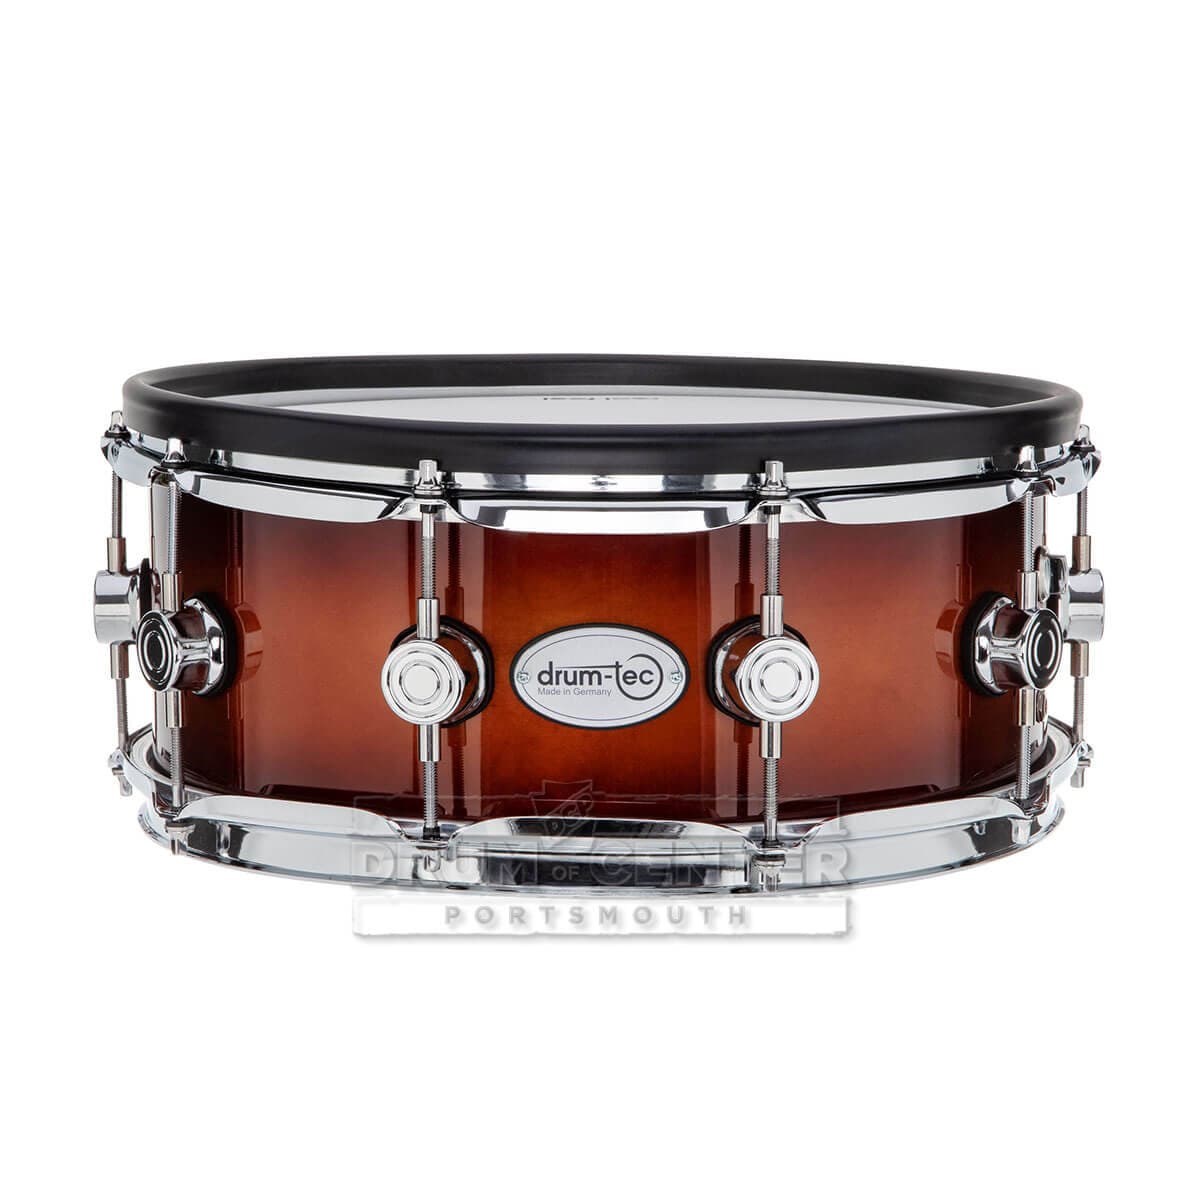 Drum-Tec Pro 3 Series E-Snare Drum 14x5.5 Brown Sunburst